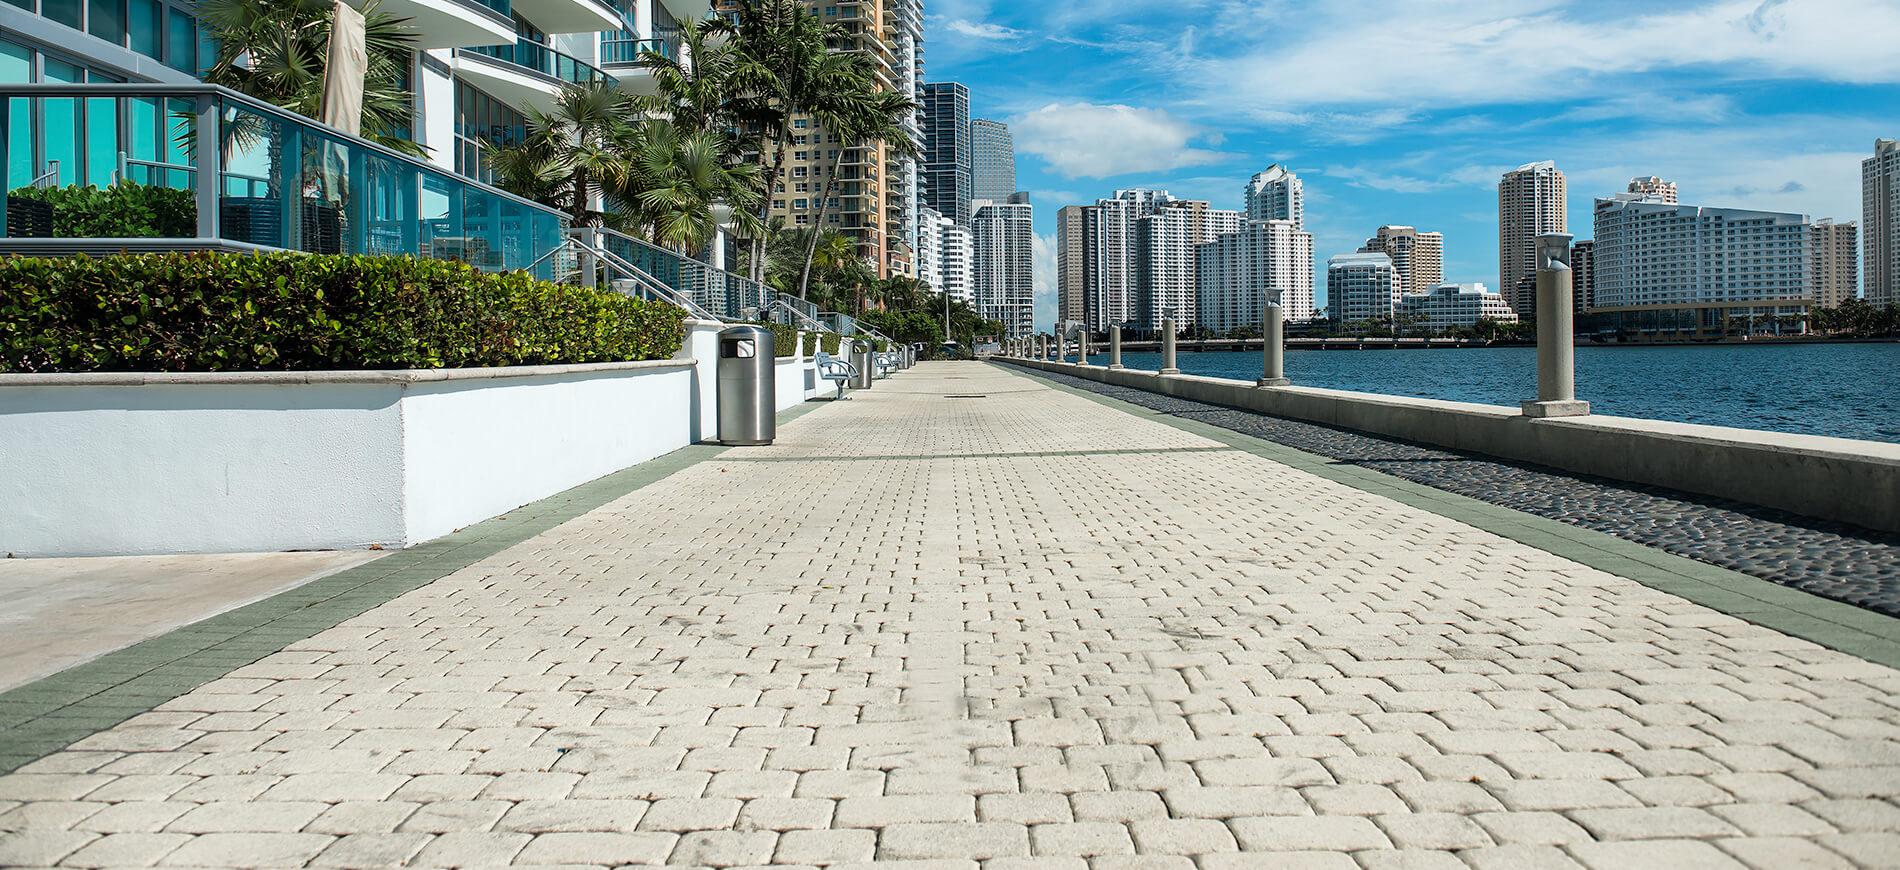 Miami boardwalk along water